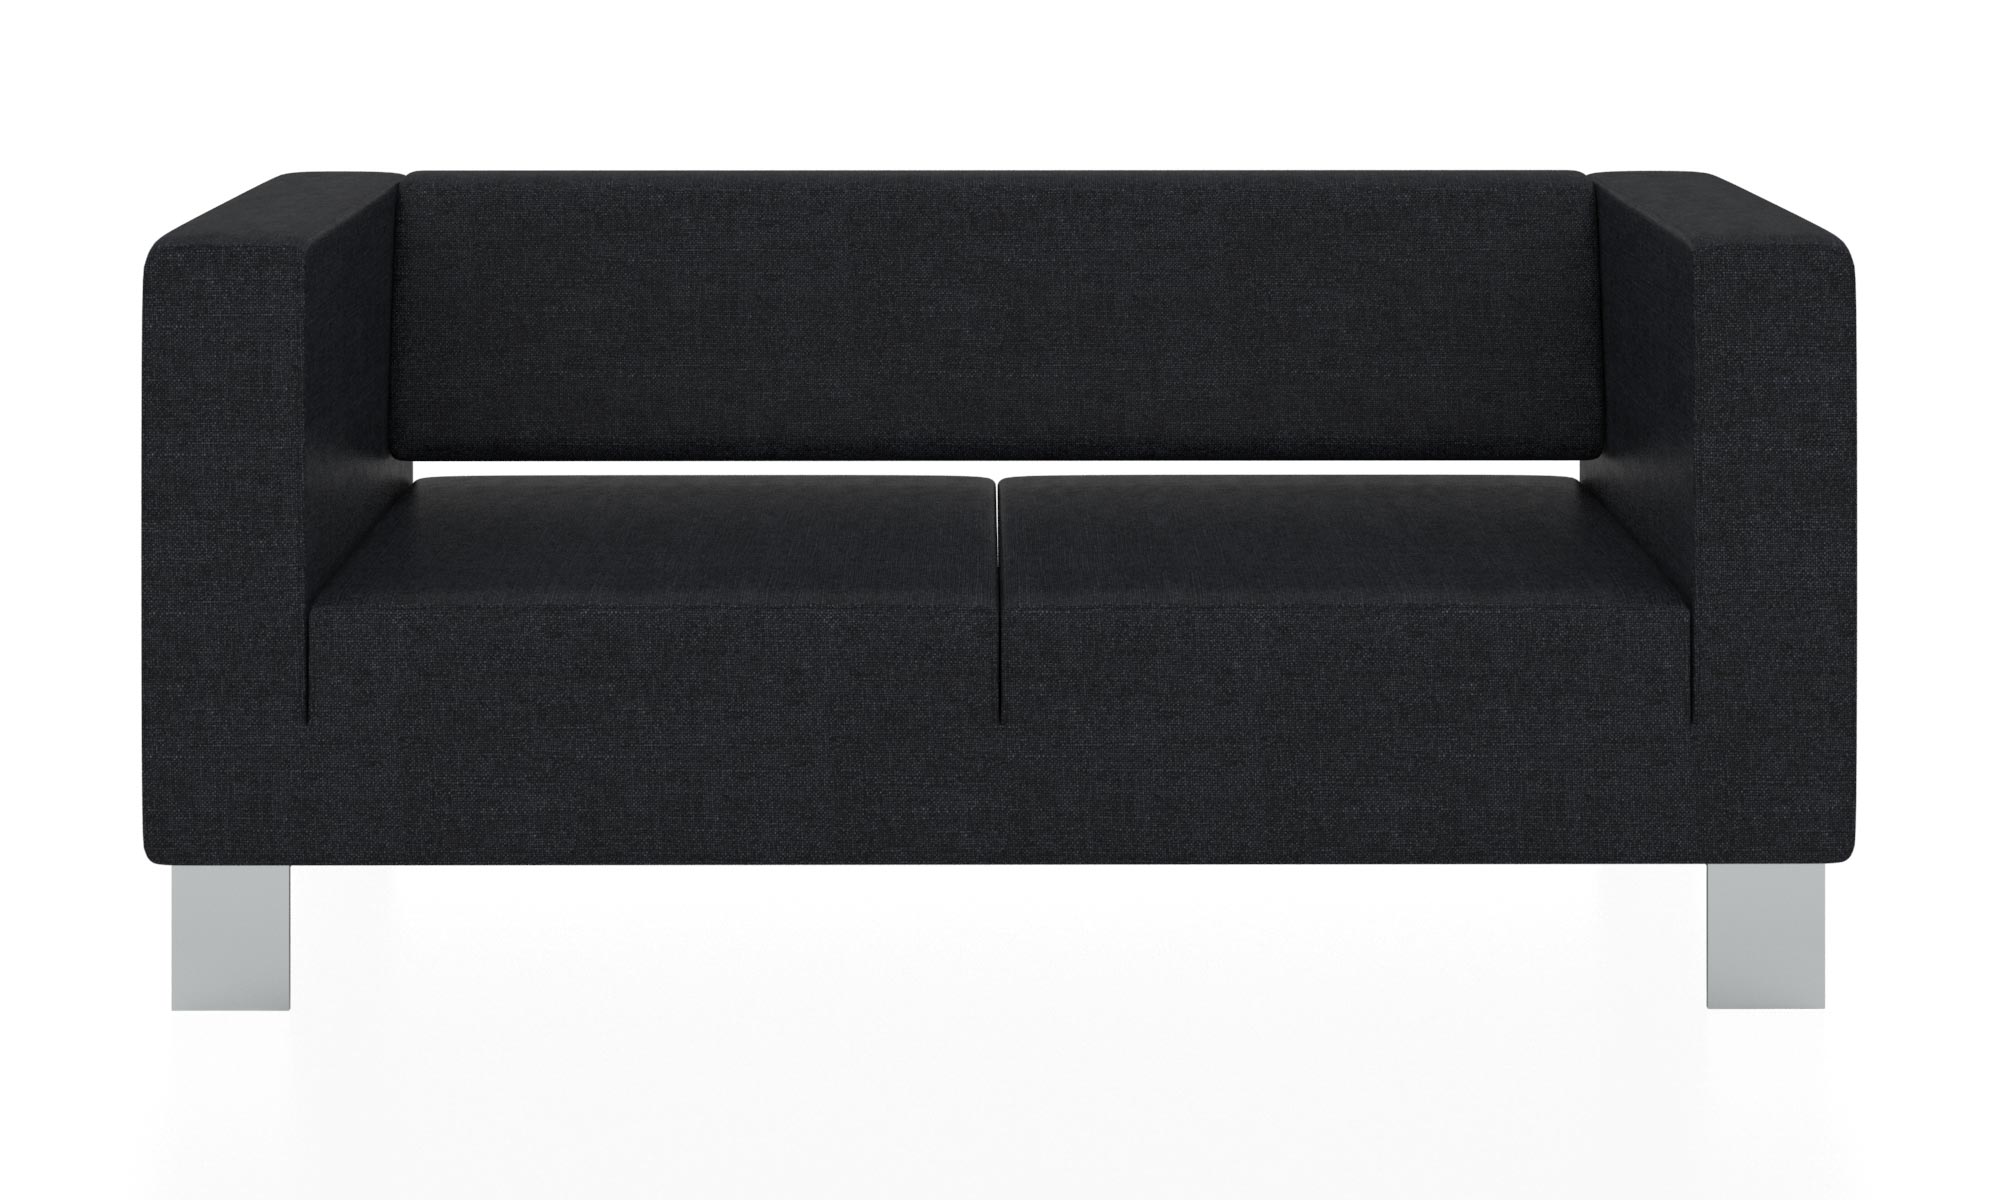 Современный двухместный диван с обивкой из ткани. Цвет черный (Flash 19).